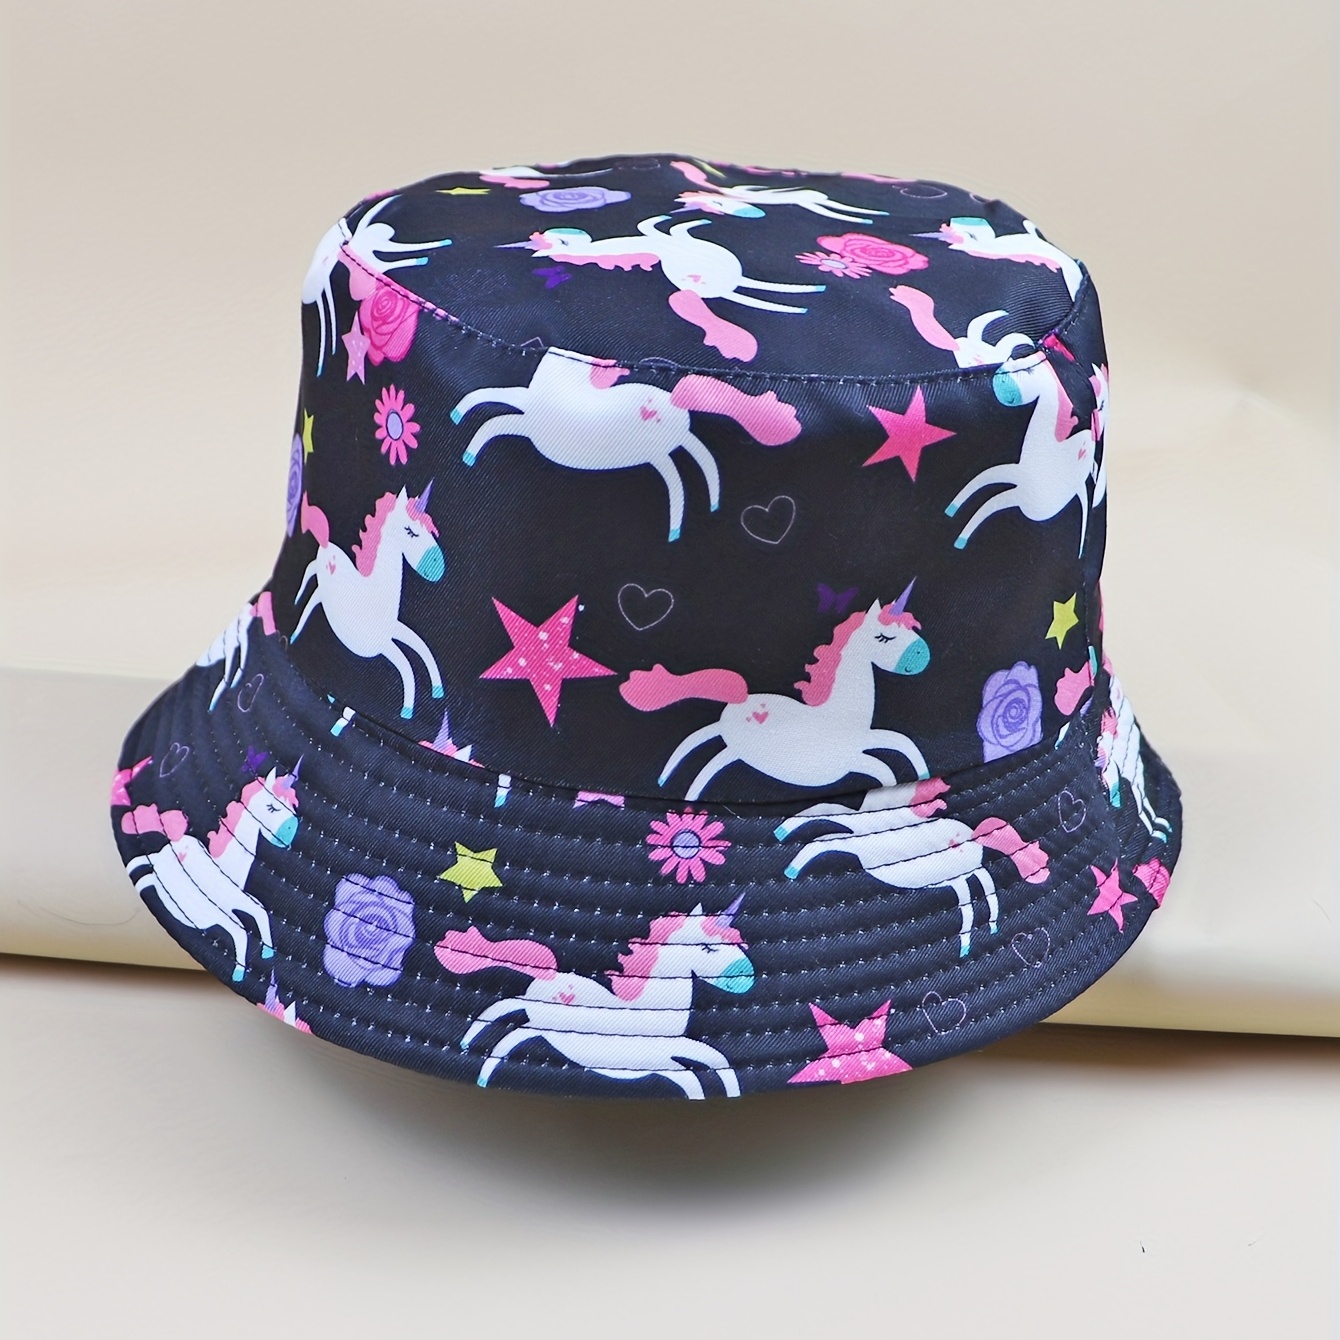 Mbti Type Printed Bucket Hat Stylish Casual Fisherman - Temu United Kingdom